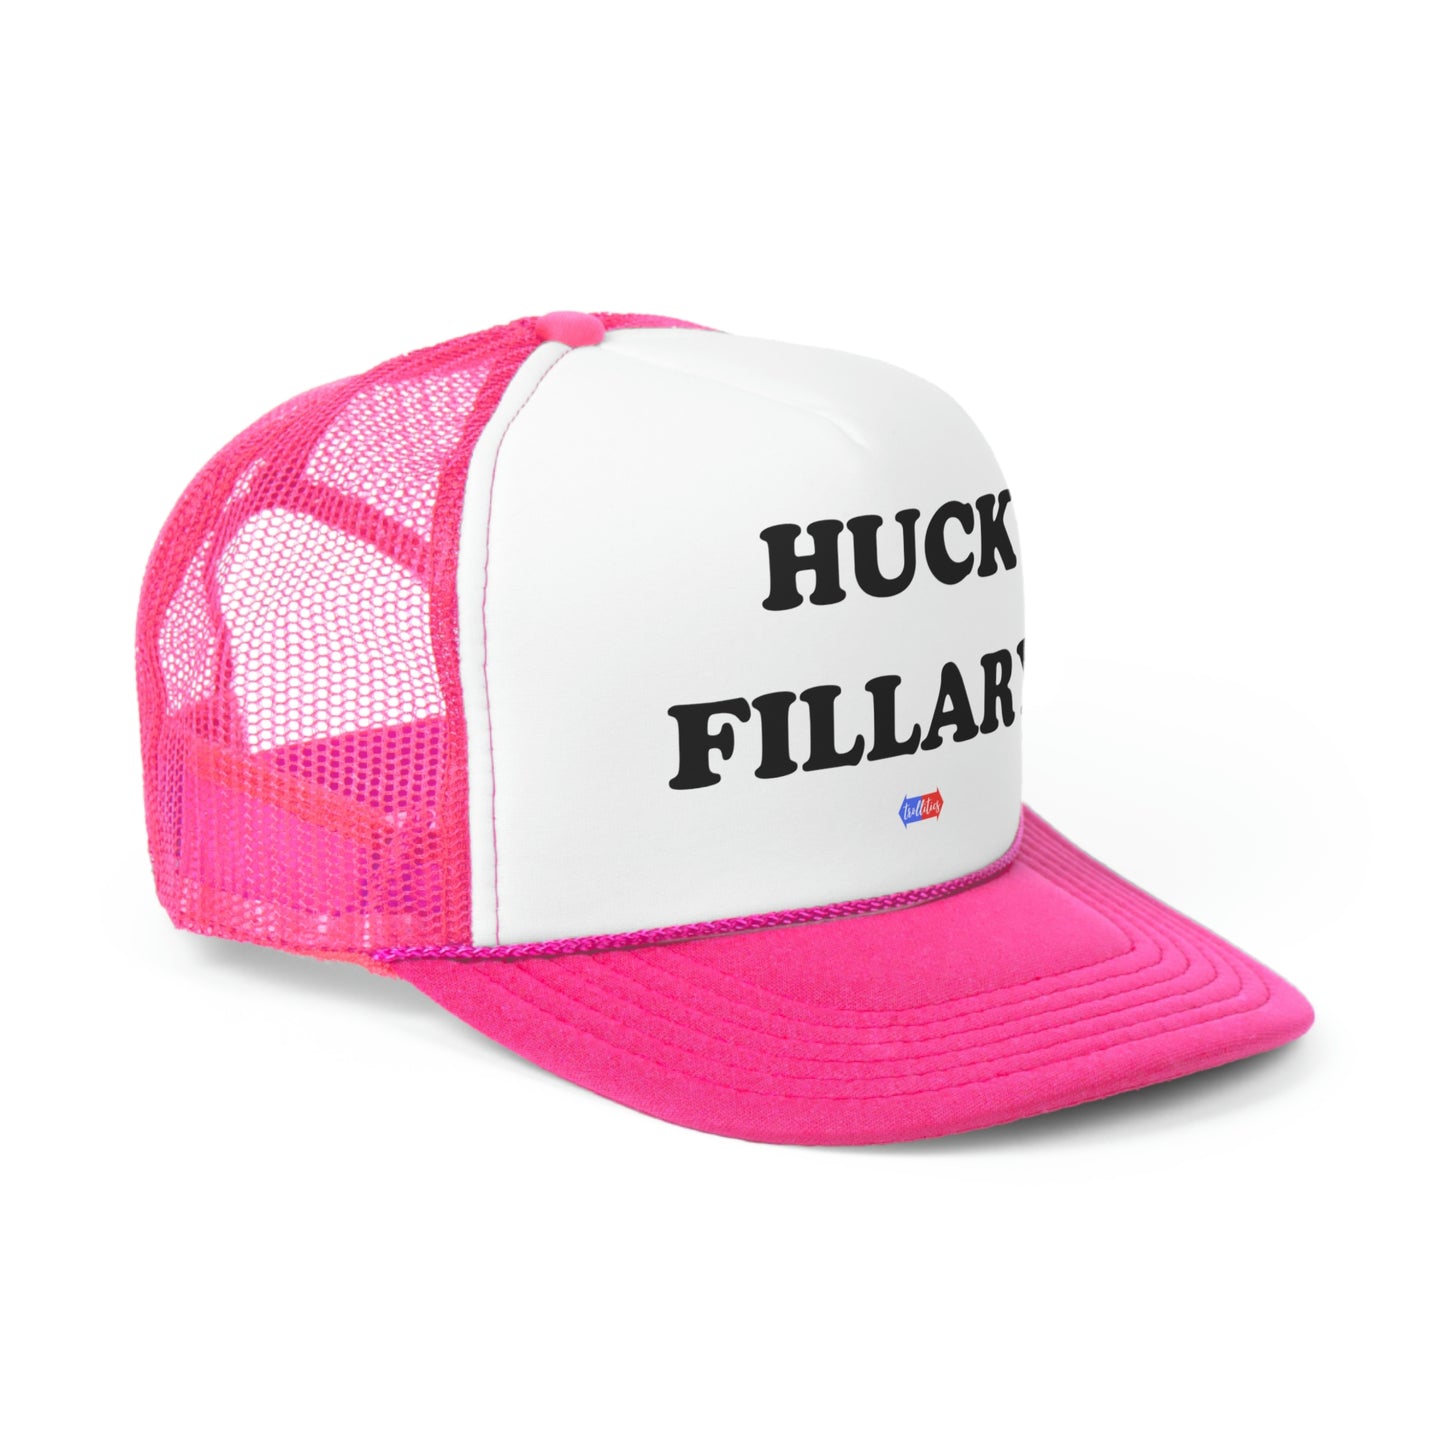 Huck Fillary Trucker Cap